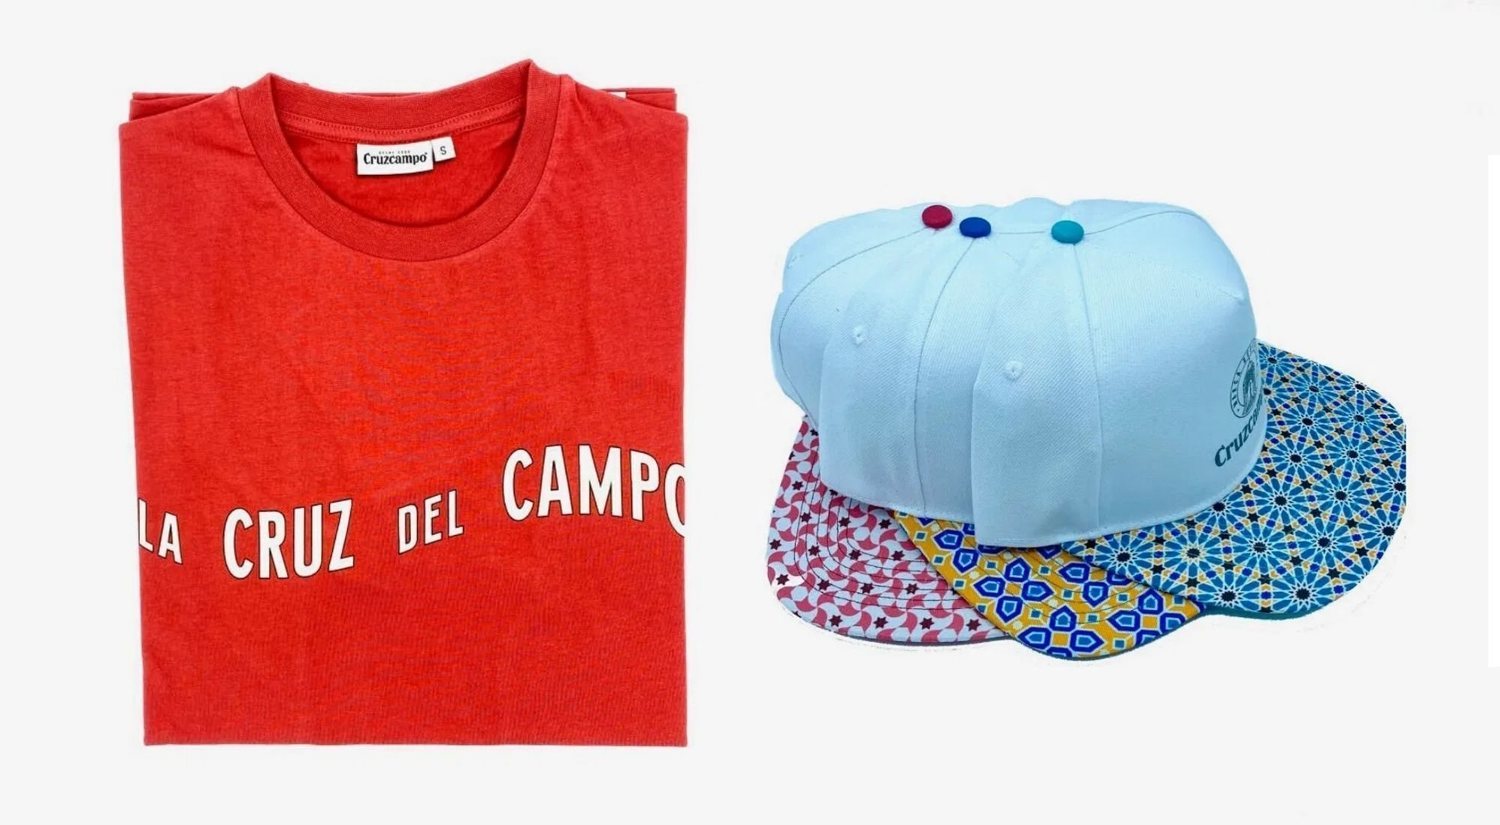 Cruzcampo lanza una colección de ropa y se suma a la nueva fiebre de la moda corporativa